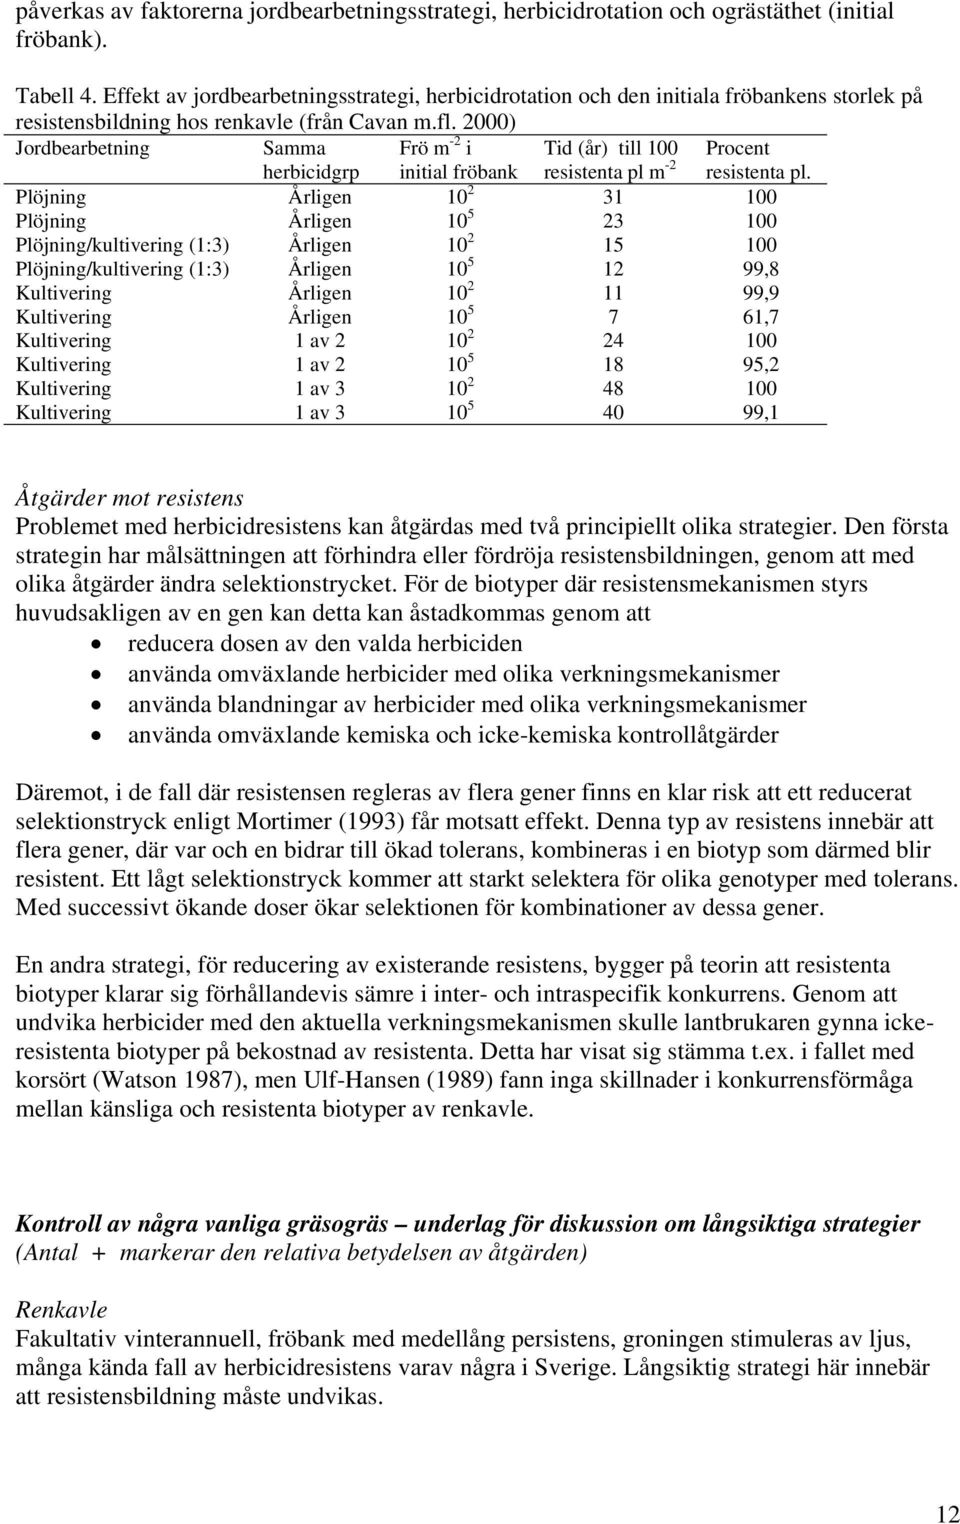 2000) Jordbearbetning Samma herbicidgrp Frö m -2 i initial fröbank Tid (år) till 100 resistenta pl m -2 Procent resistenta pl.